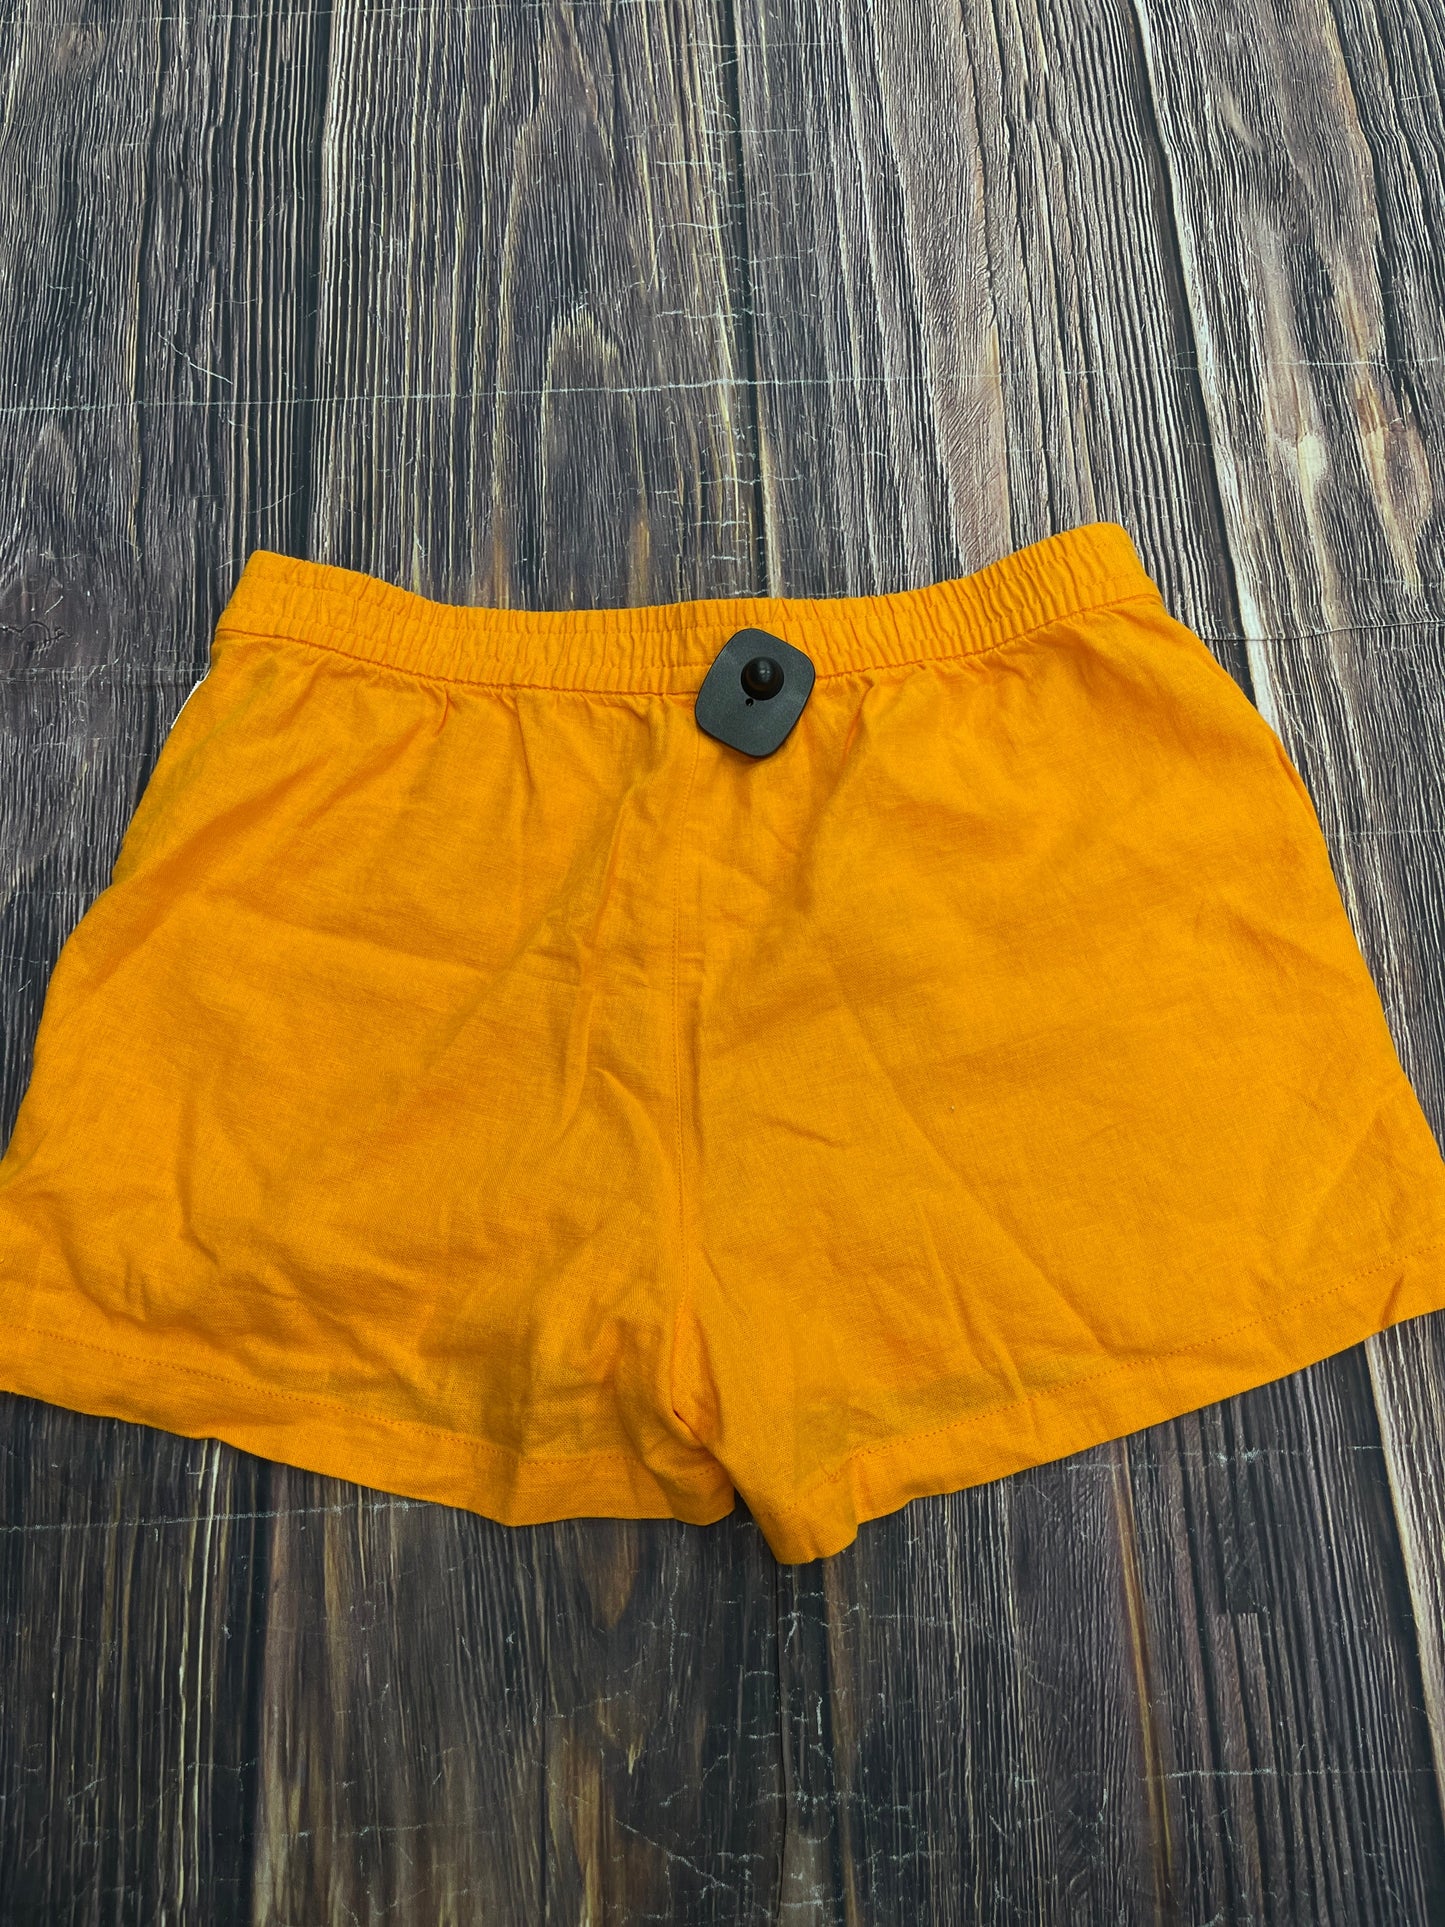 Orange Shorts J. Crew, Size S